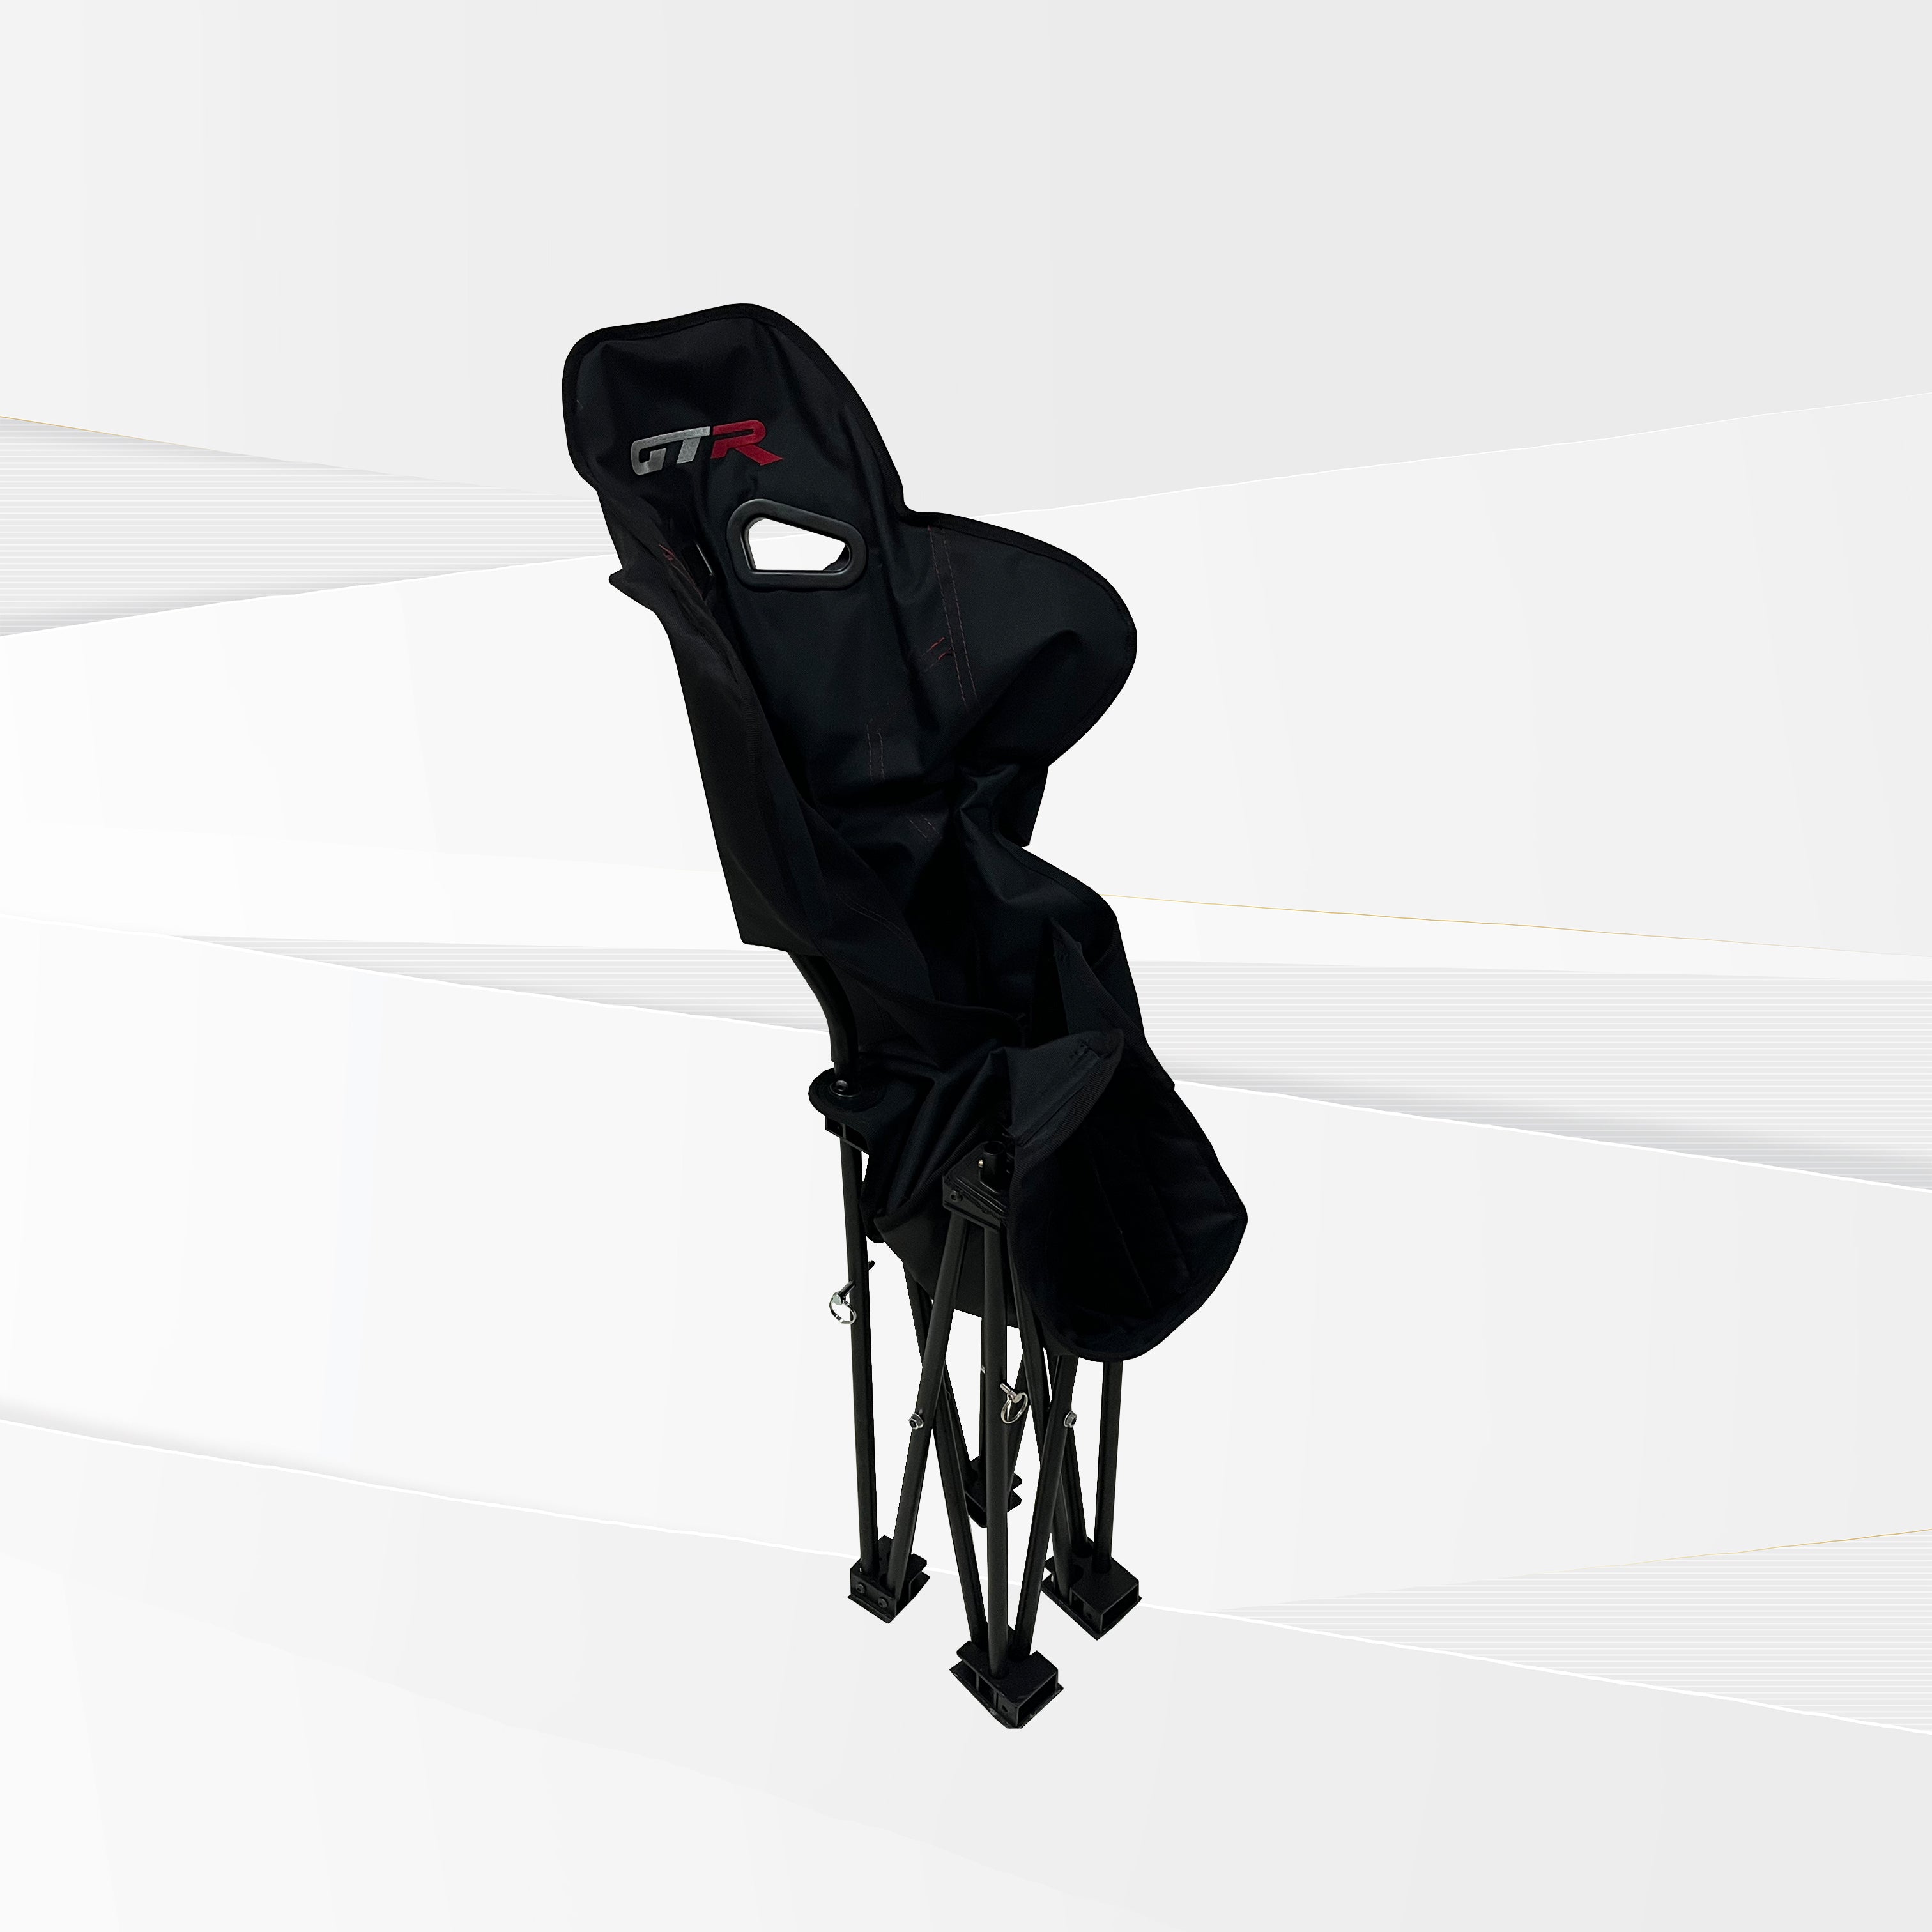 GTR Simulator GTA Modelo Marco plateado con asiento de carreras de cuero  sintético ajustable, silla de cabina simulador de juegos | Rueda RS30 